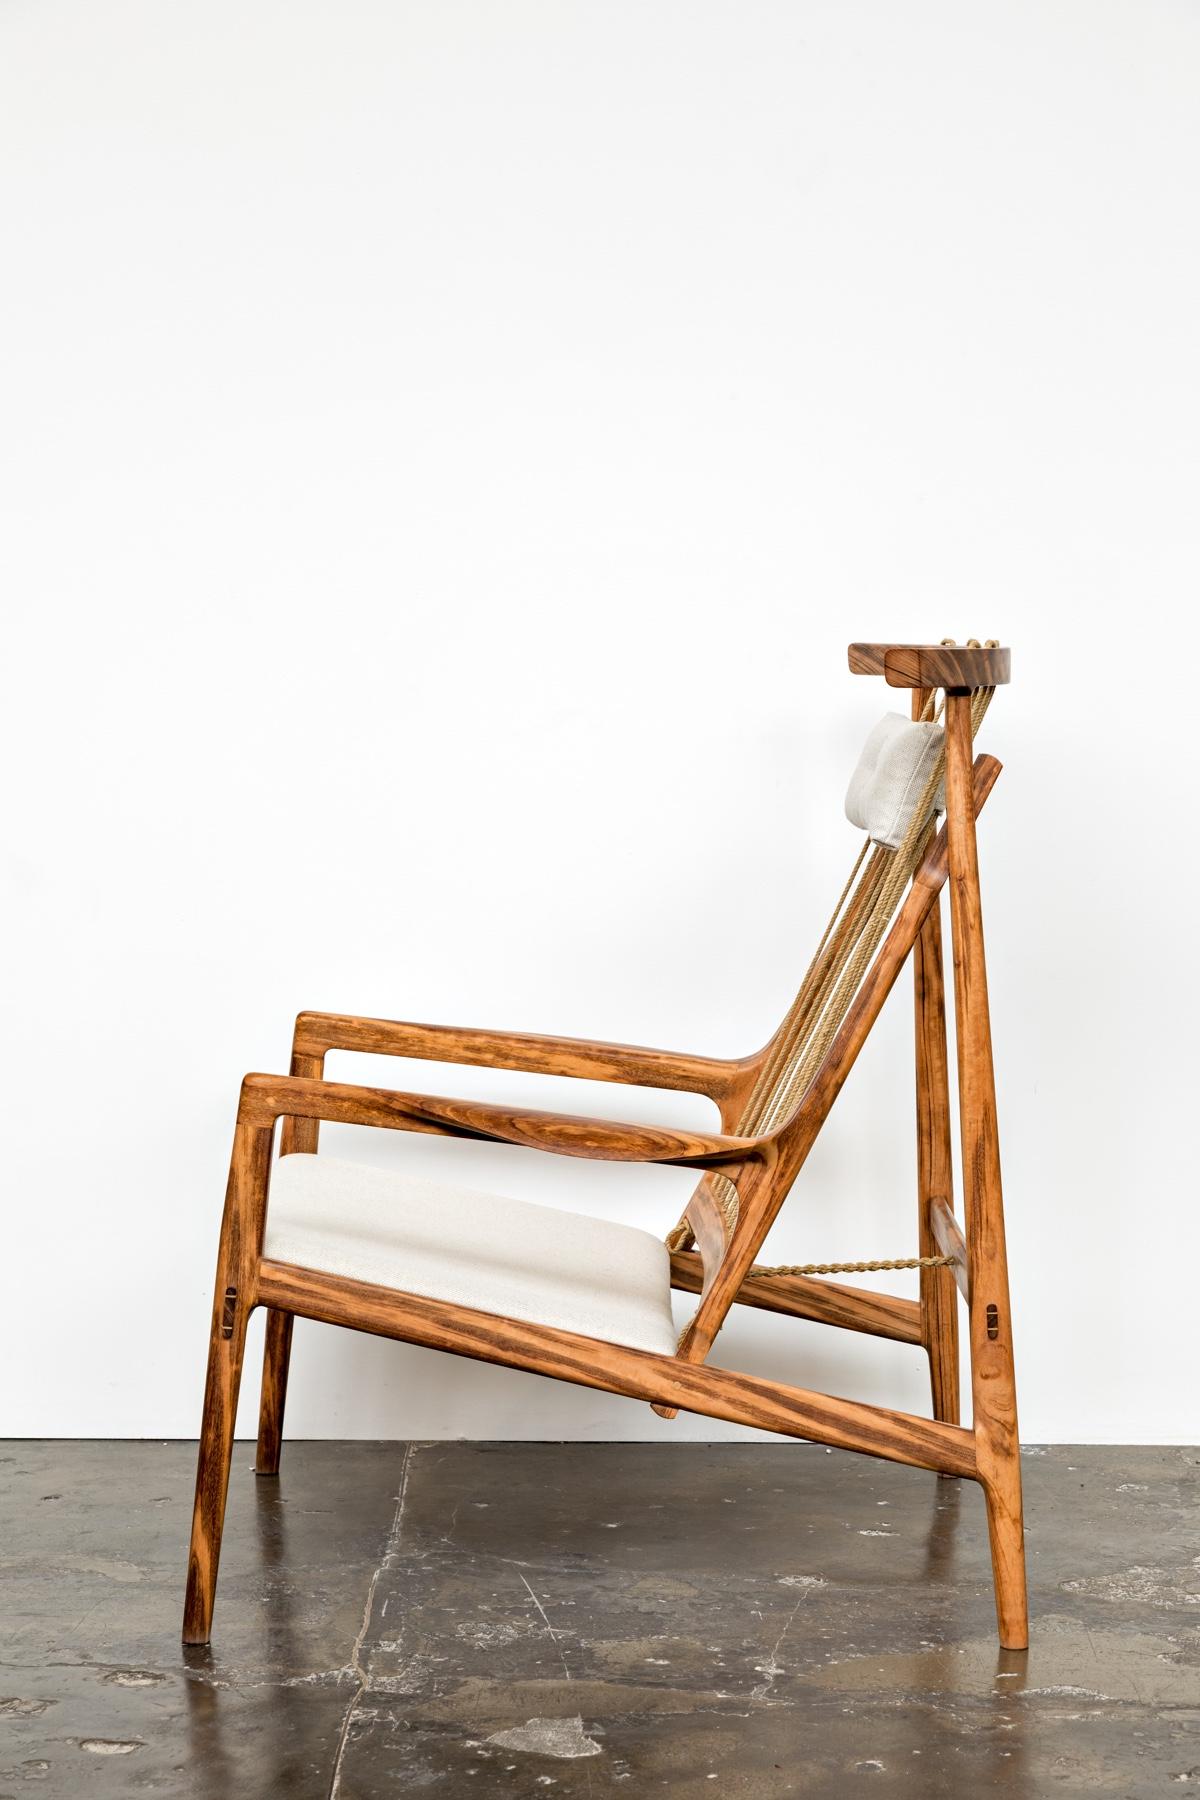 Zeitgenössischer Sessel aus tropischem Hartholz mit gepolstertem Sitz  und Kopfkissen aus Leinen.

Die Rückenlehne besteht aus Rami Cord, einer pflanzlichen Faser, die gedreht und behandelt wird.

Der hier gezeigte Sessel ist ein exklusives Stück